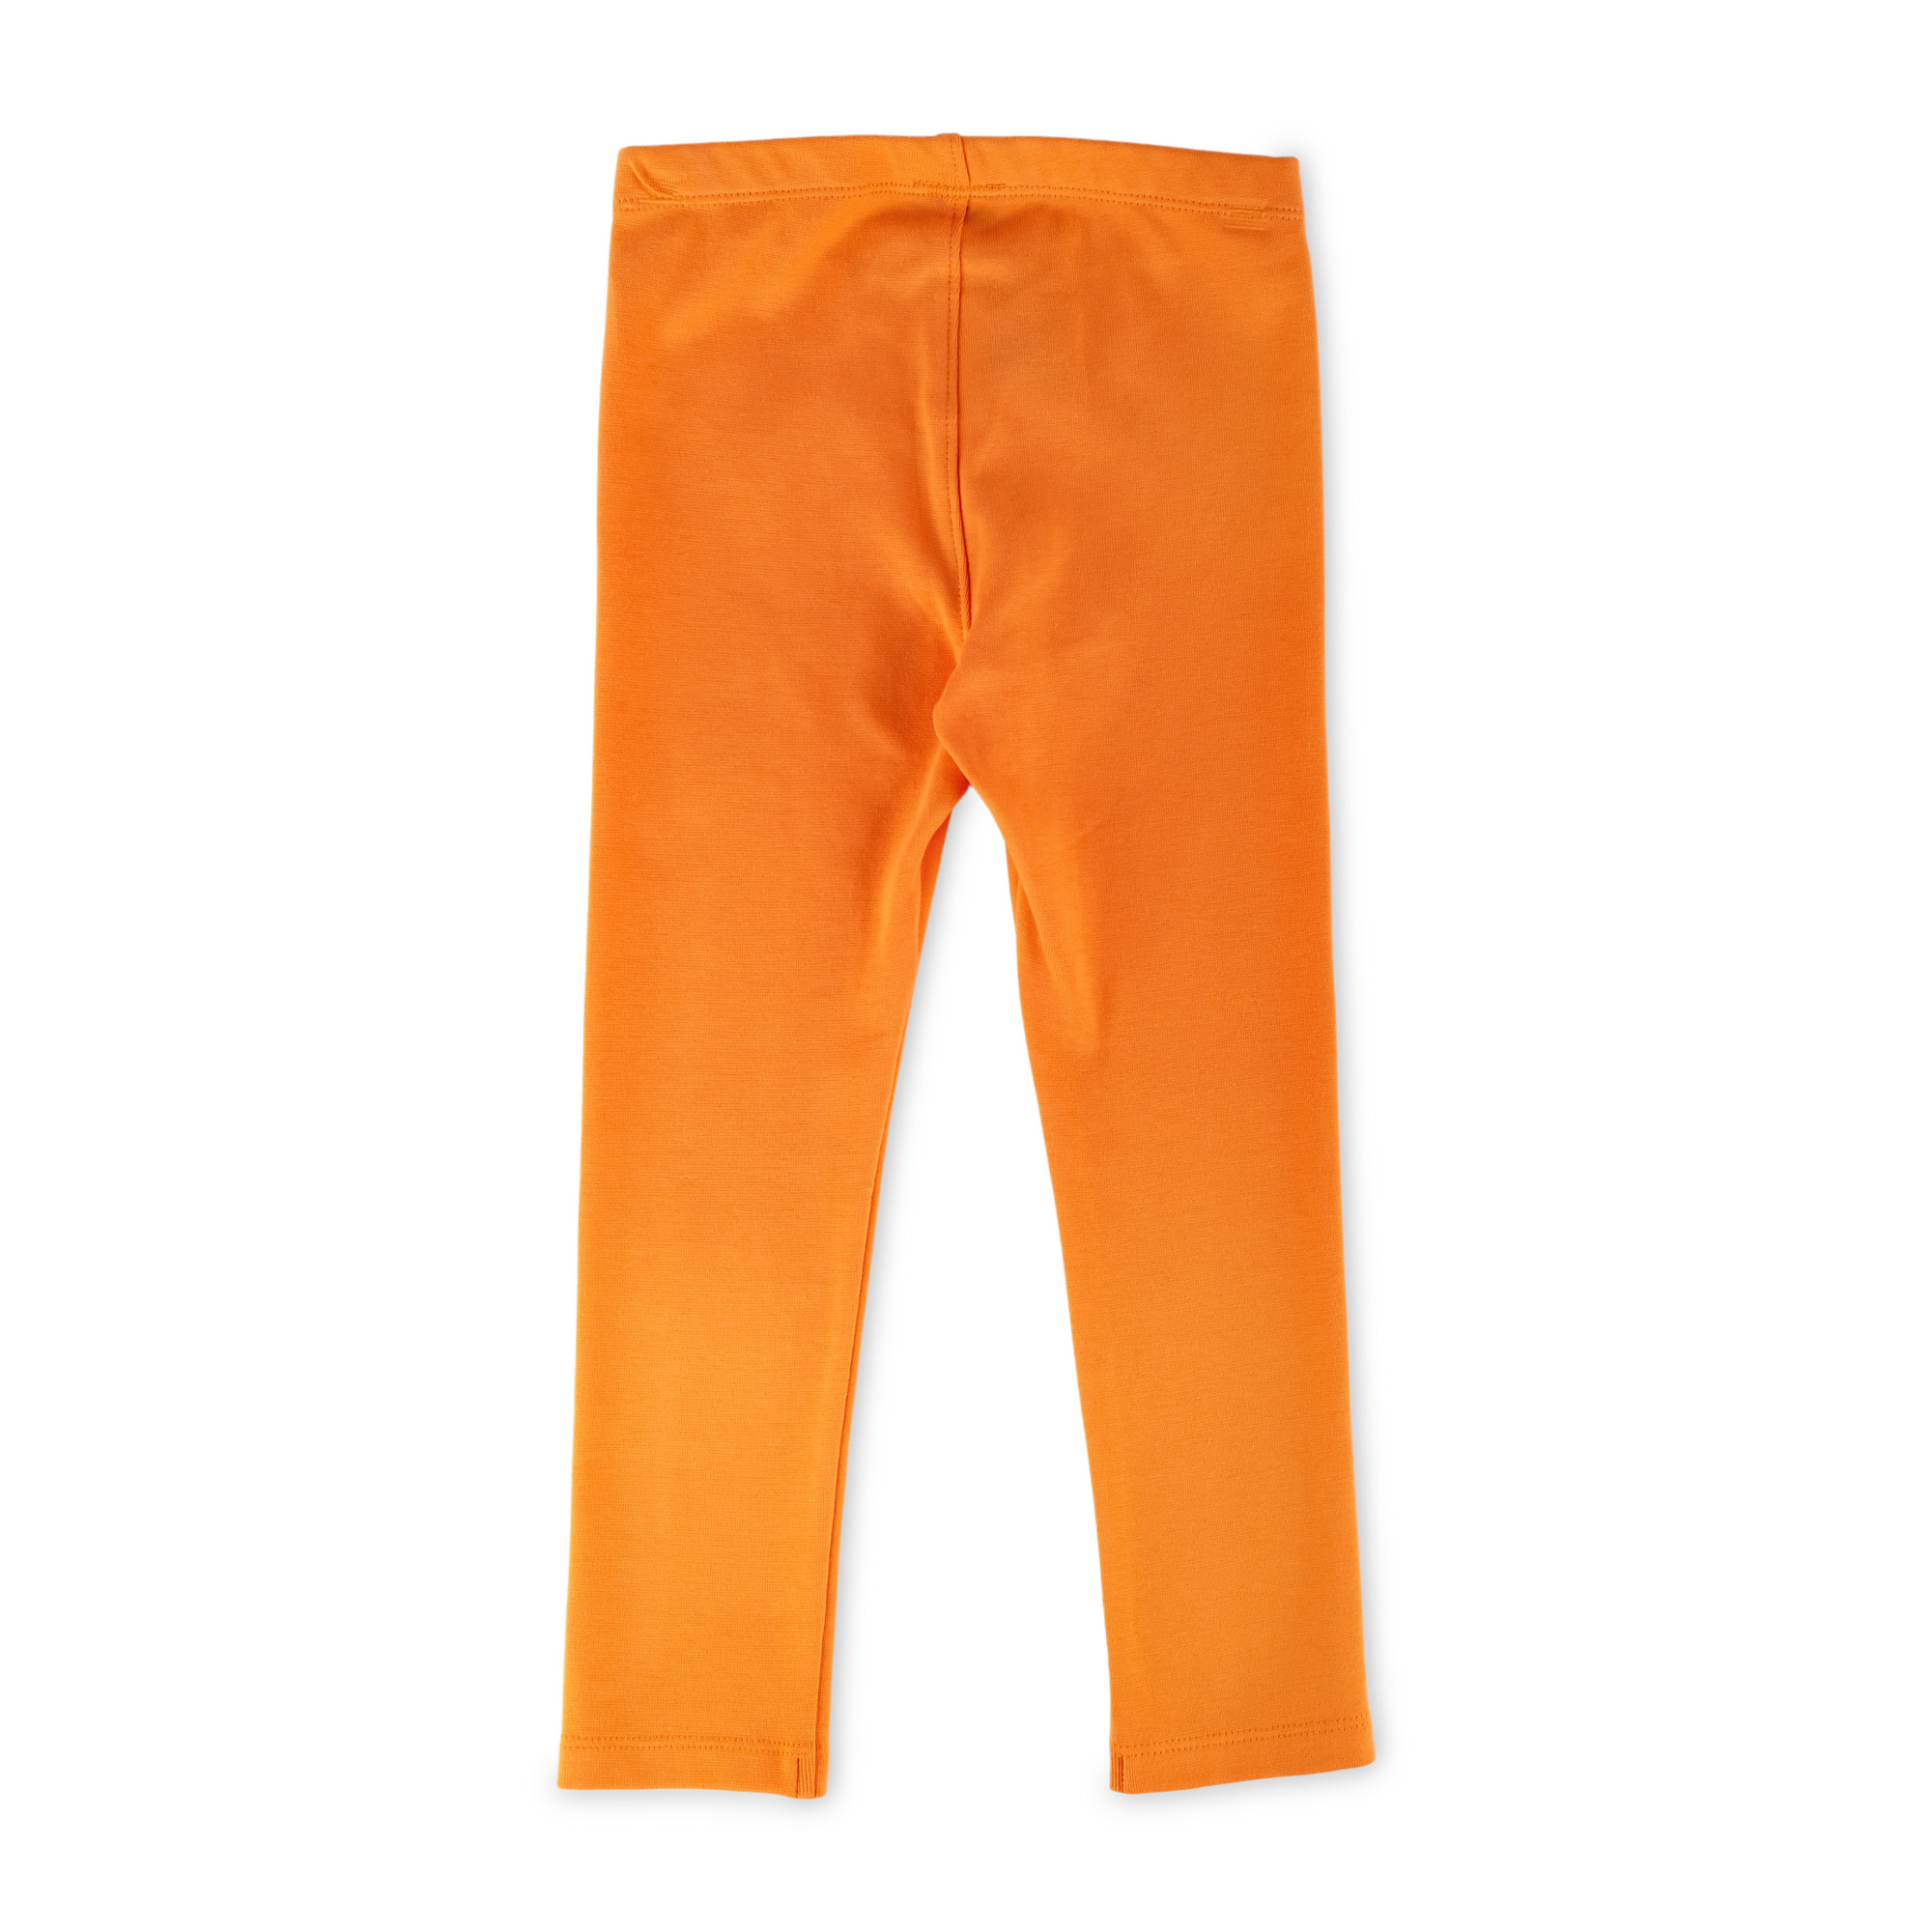 Kinder Leggings in Orange